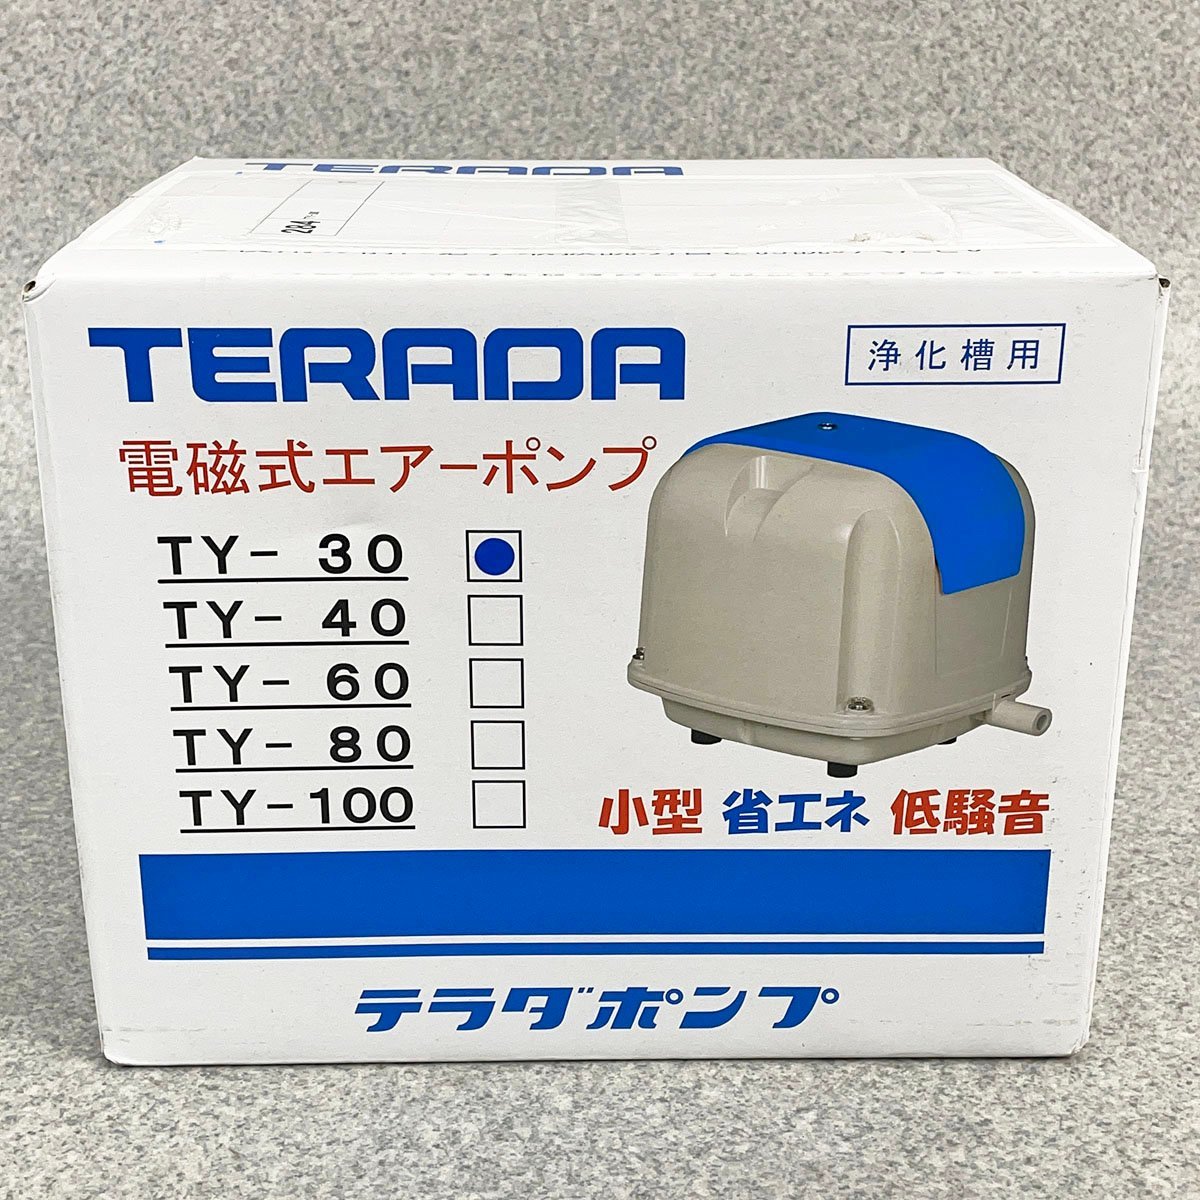 絶対一番安い TERADA 未開封品 テラダポンプ [R11457] 寺田ポンプ製作所 TY-30 浄化槽用 電磁式エアーポンプ ポンプ